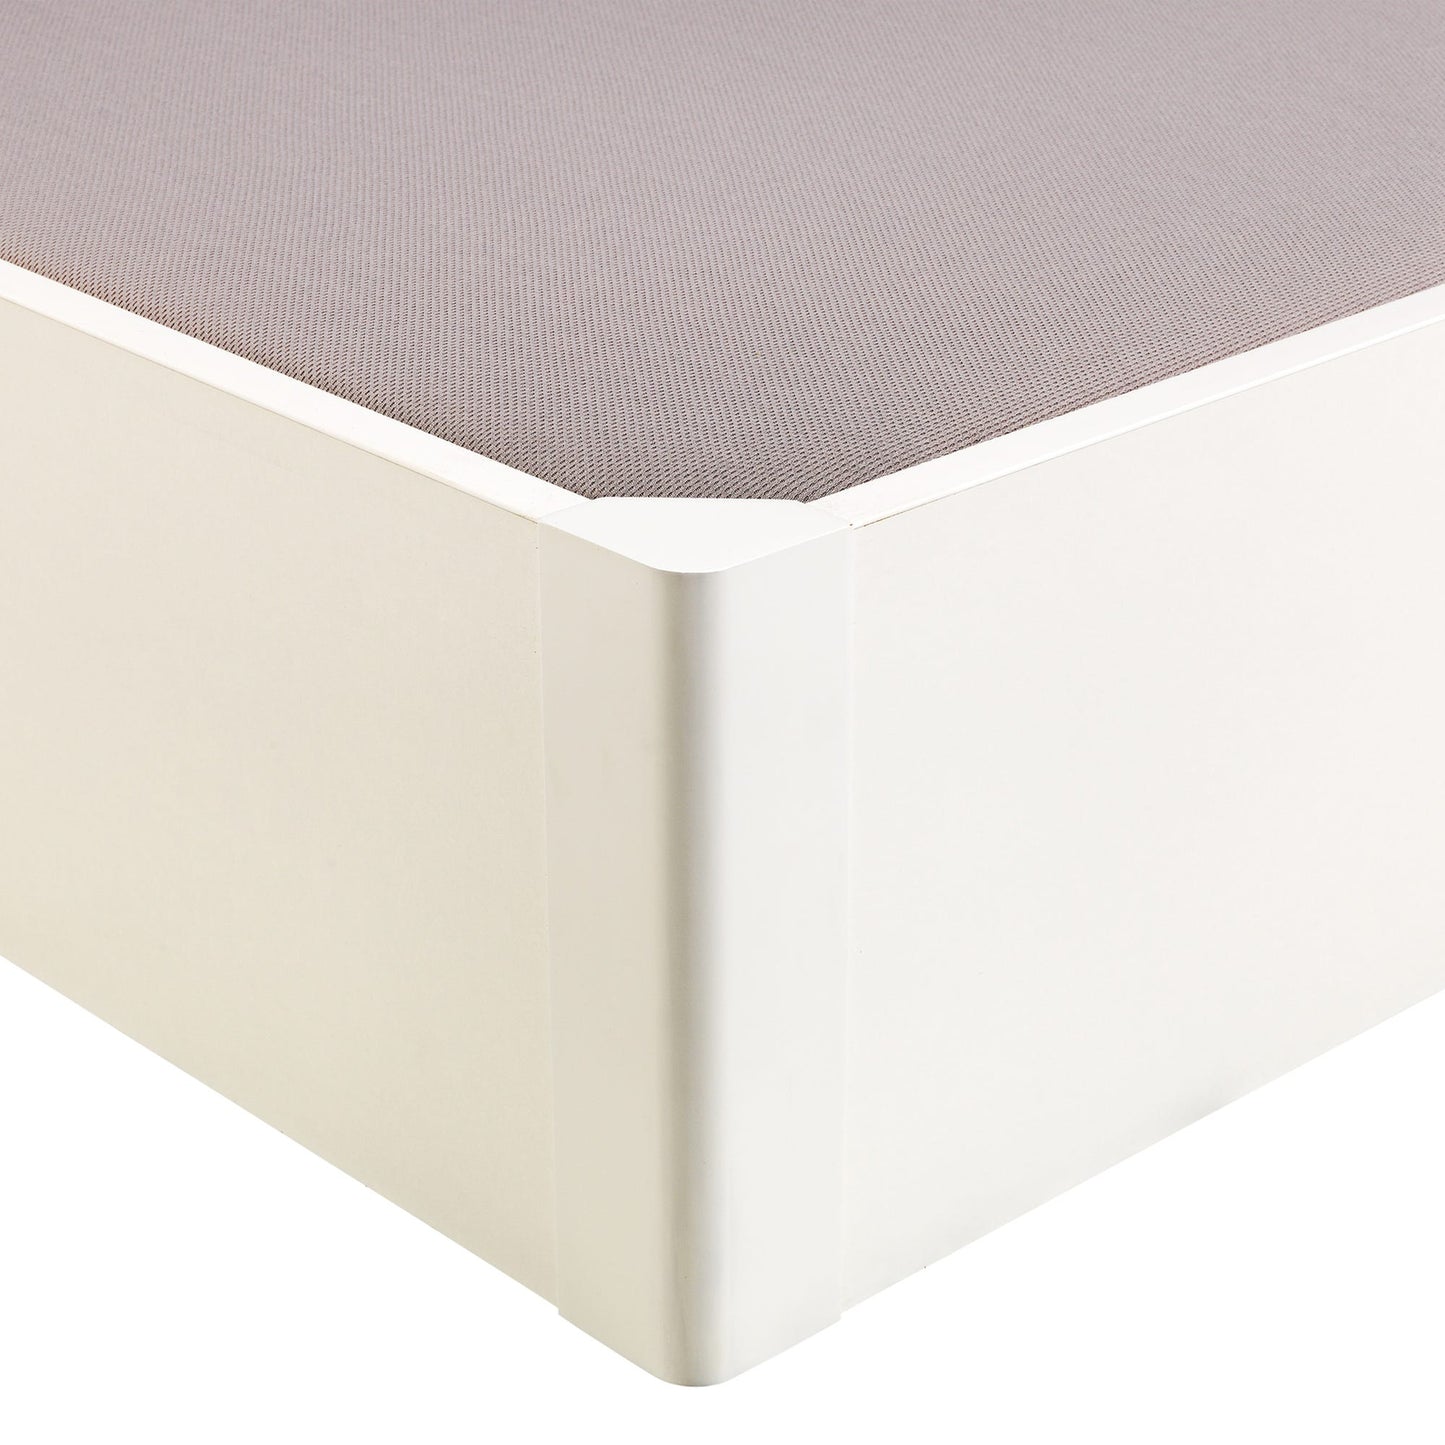 Canapé abatible de madera tapa única de color blanco - DESIGN - 150x190